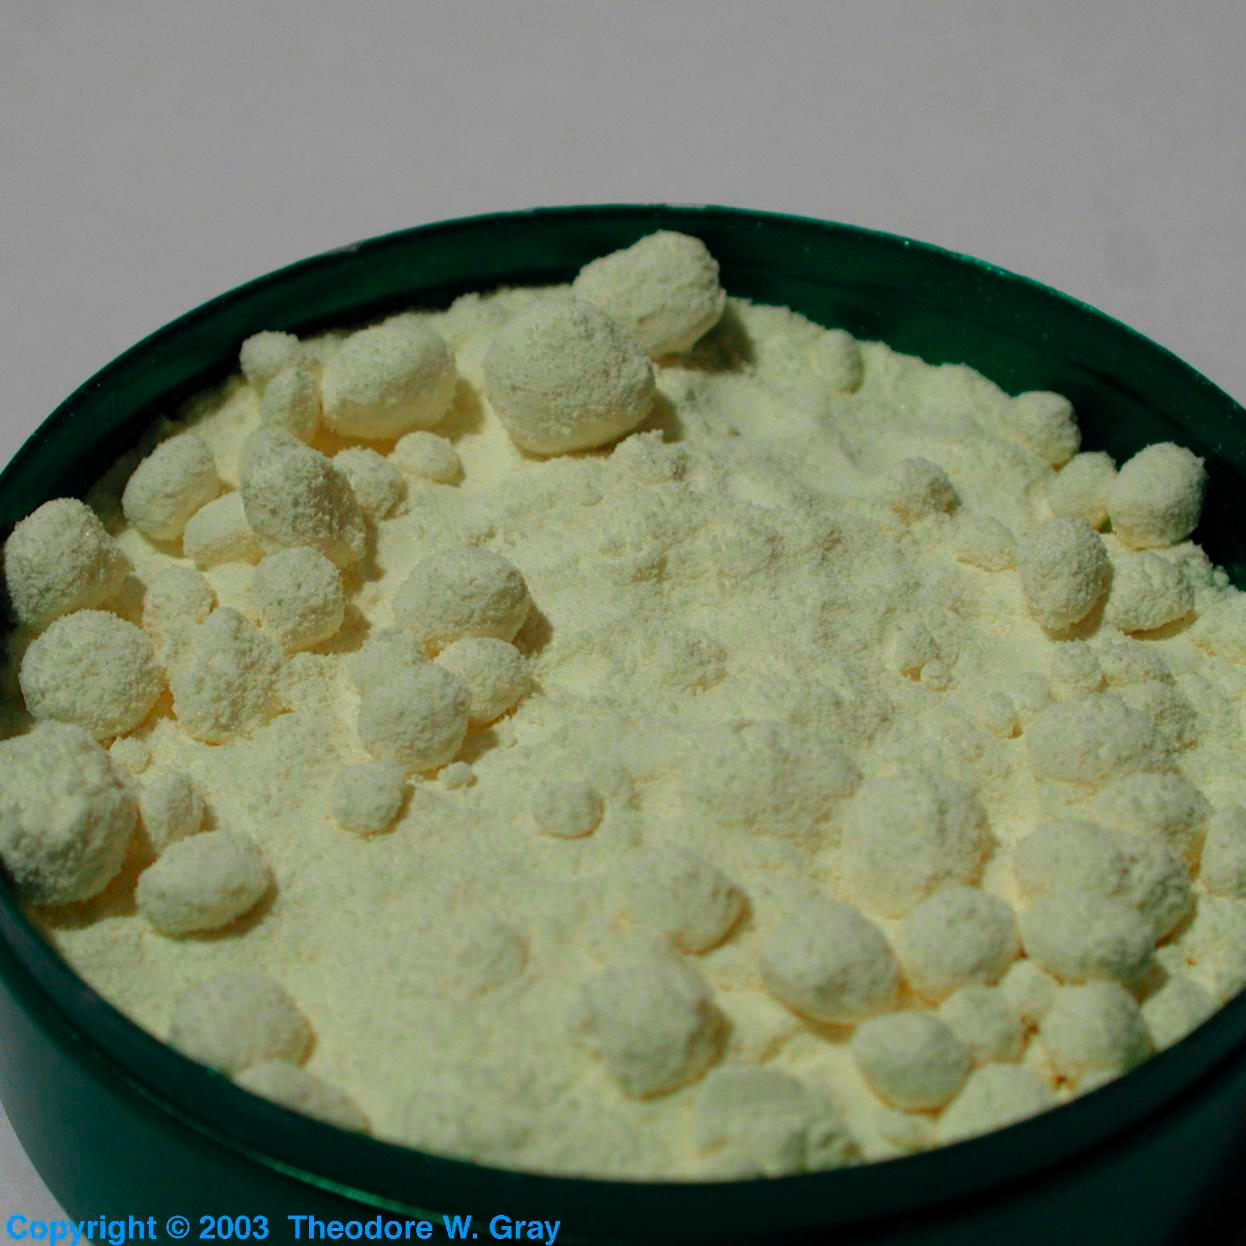 Micronized sulfur powder